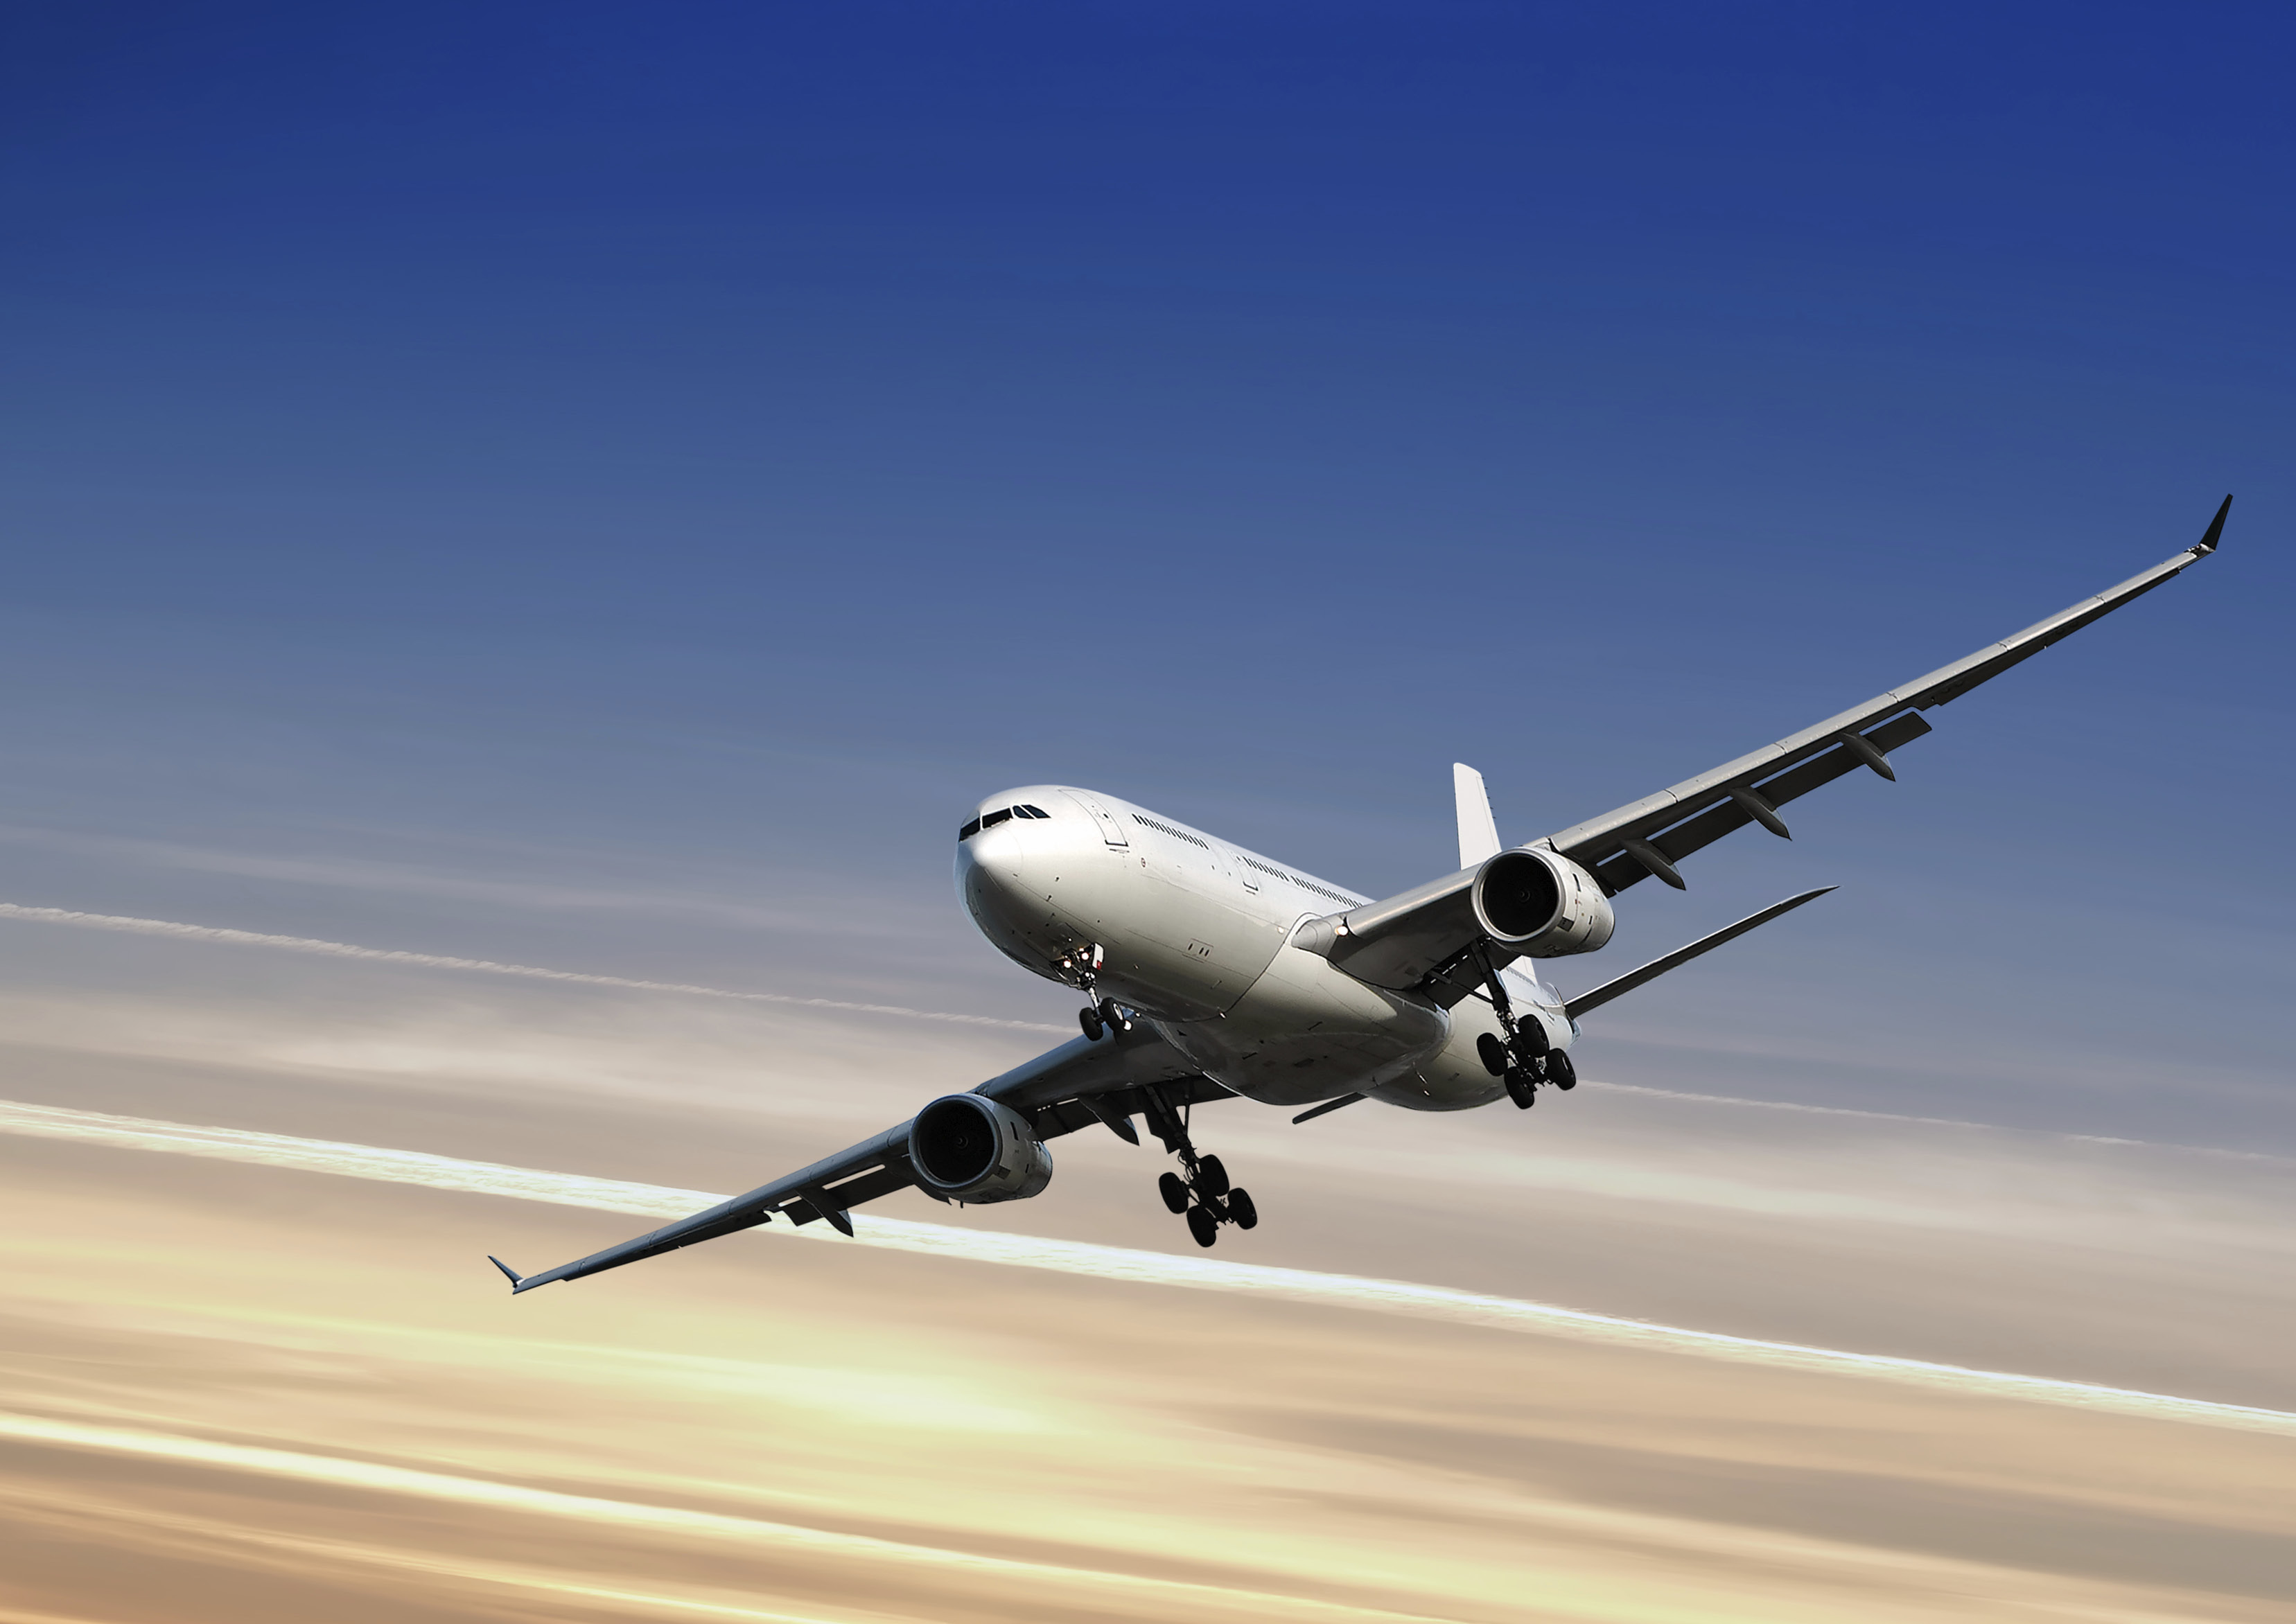 Aéreo Air 03 FLEXIBILIDAD, AGILIDAD Y EFICIENCIA EN COSTES Y EN SERVICIO FLEXIBILITY, AGILITY AND EFFICIENCY IN COST AND SERVICE Cumplimos con todas las especificaciones IATA y los más estrictos